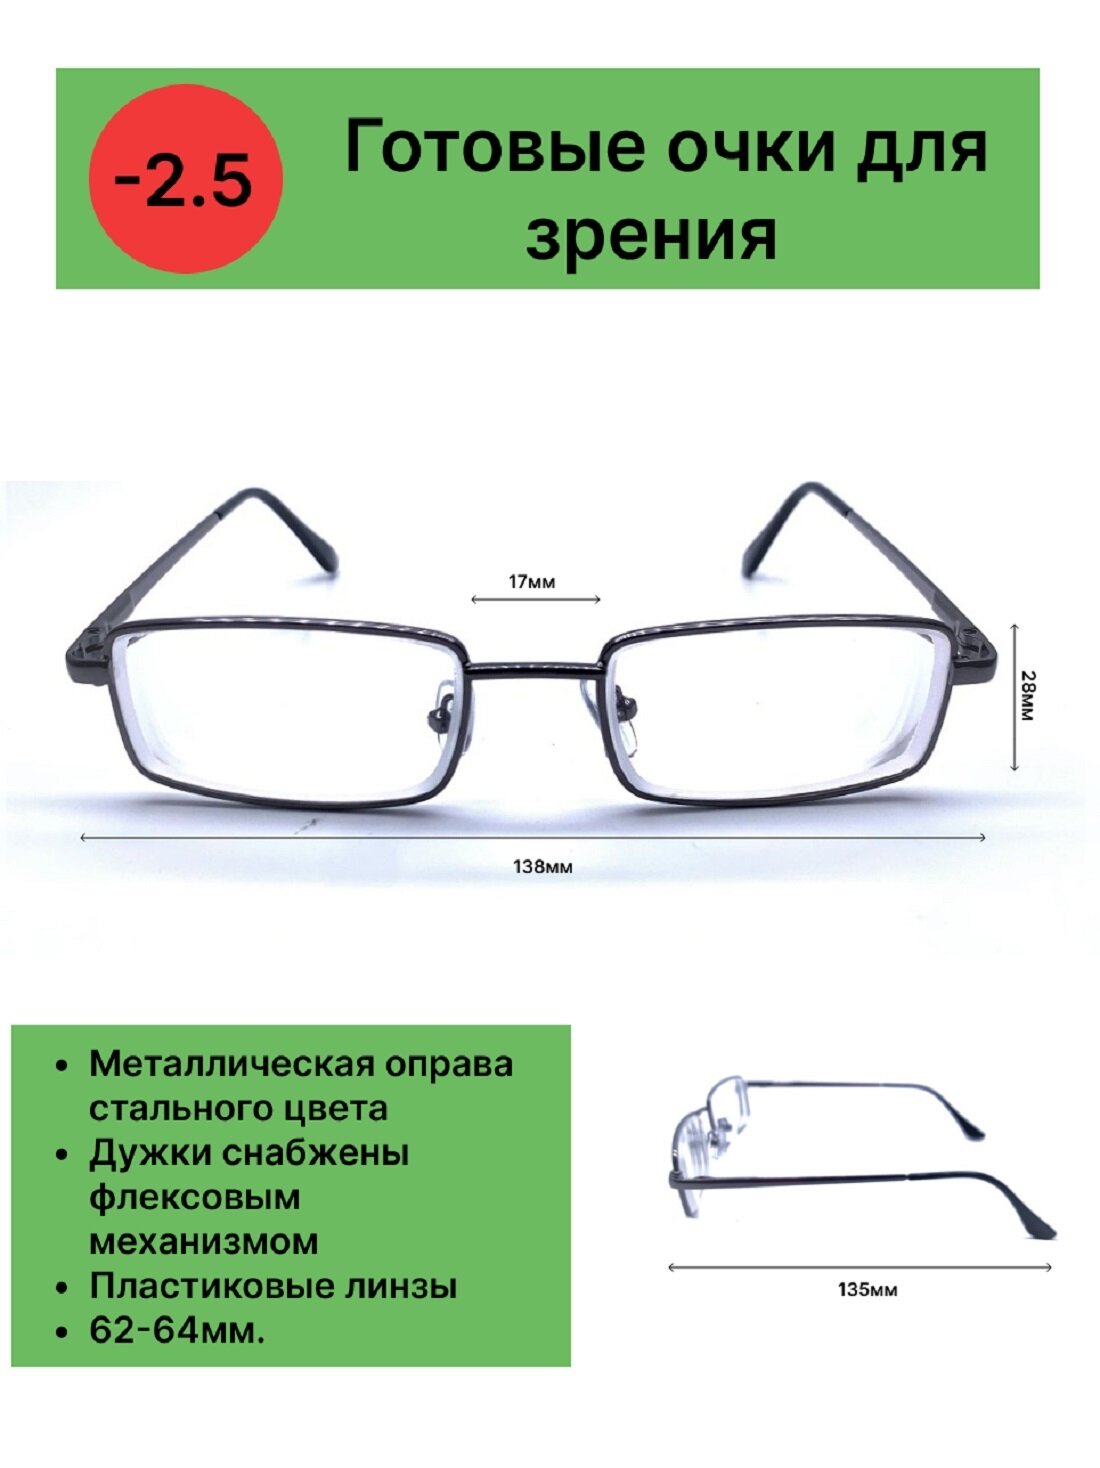 Готовые очки для зрения с диоптриями -2.5